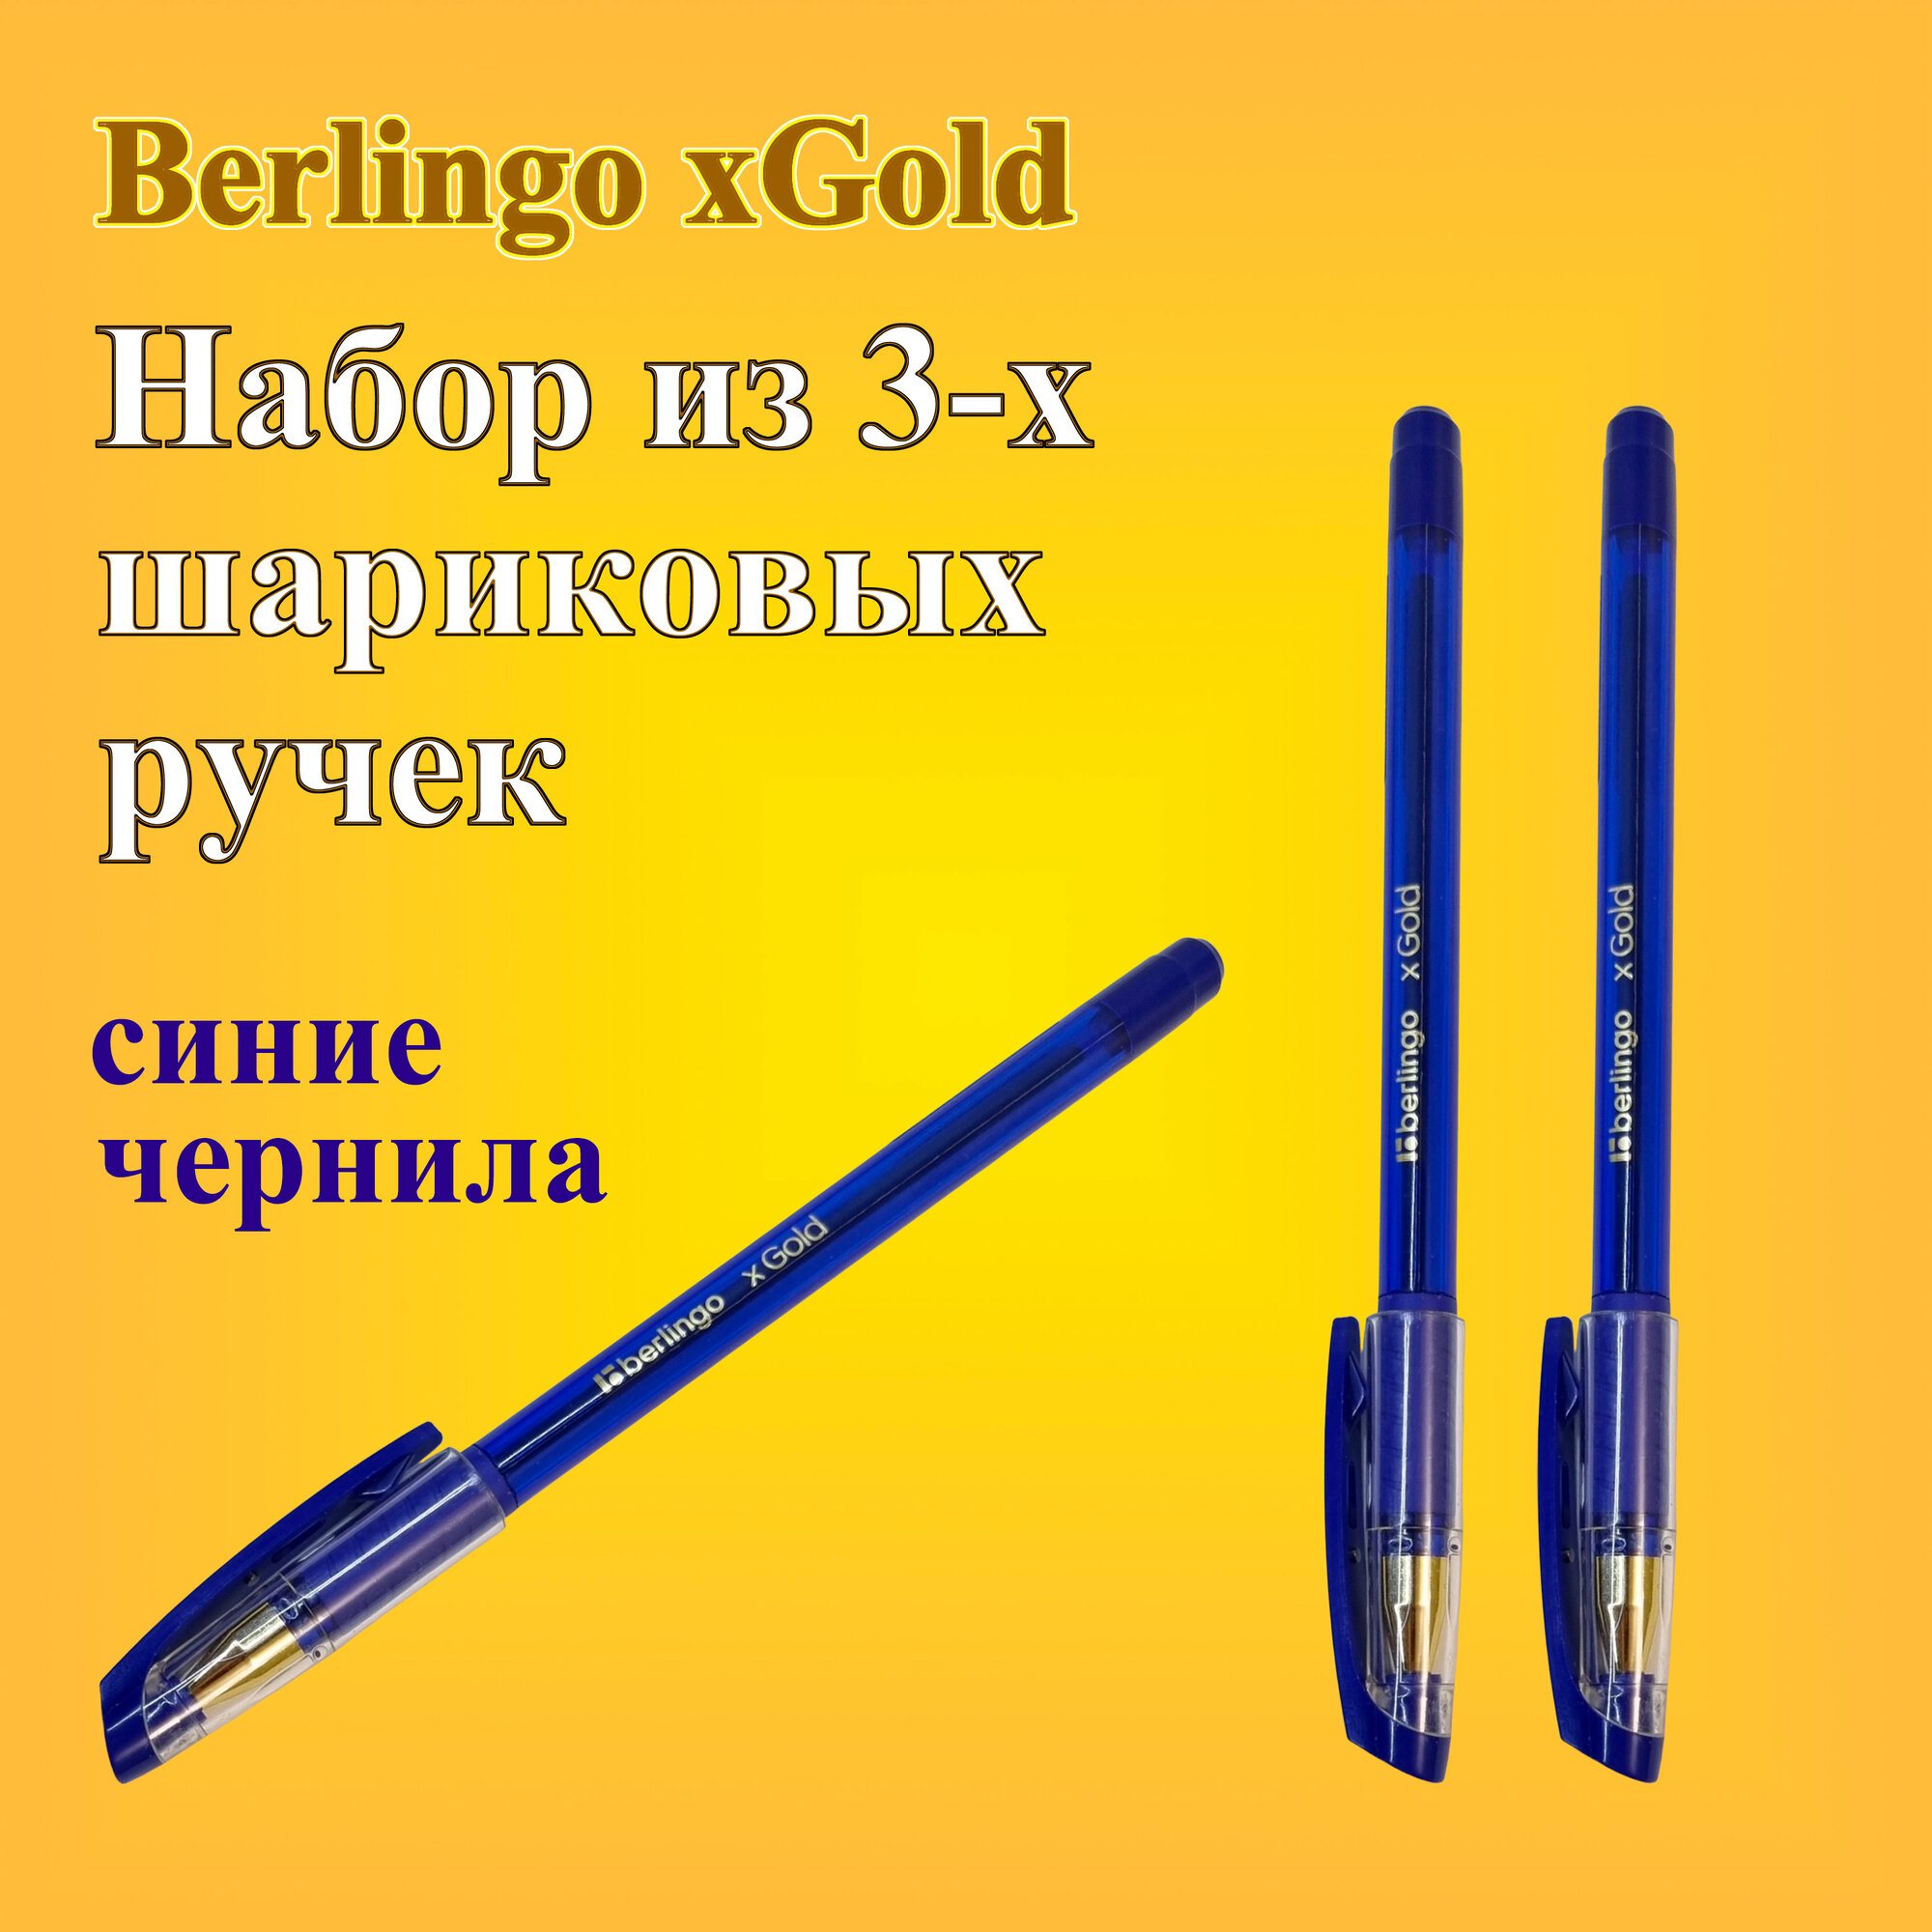 Ручка шариковая Berlingo xGold синяя 07мм набор 3 штуки игольчатый стержень грип